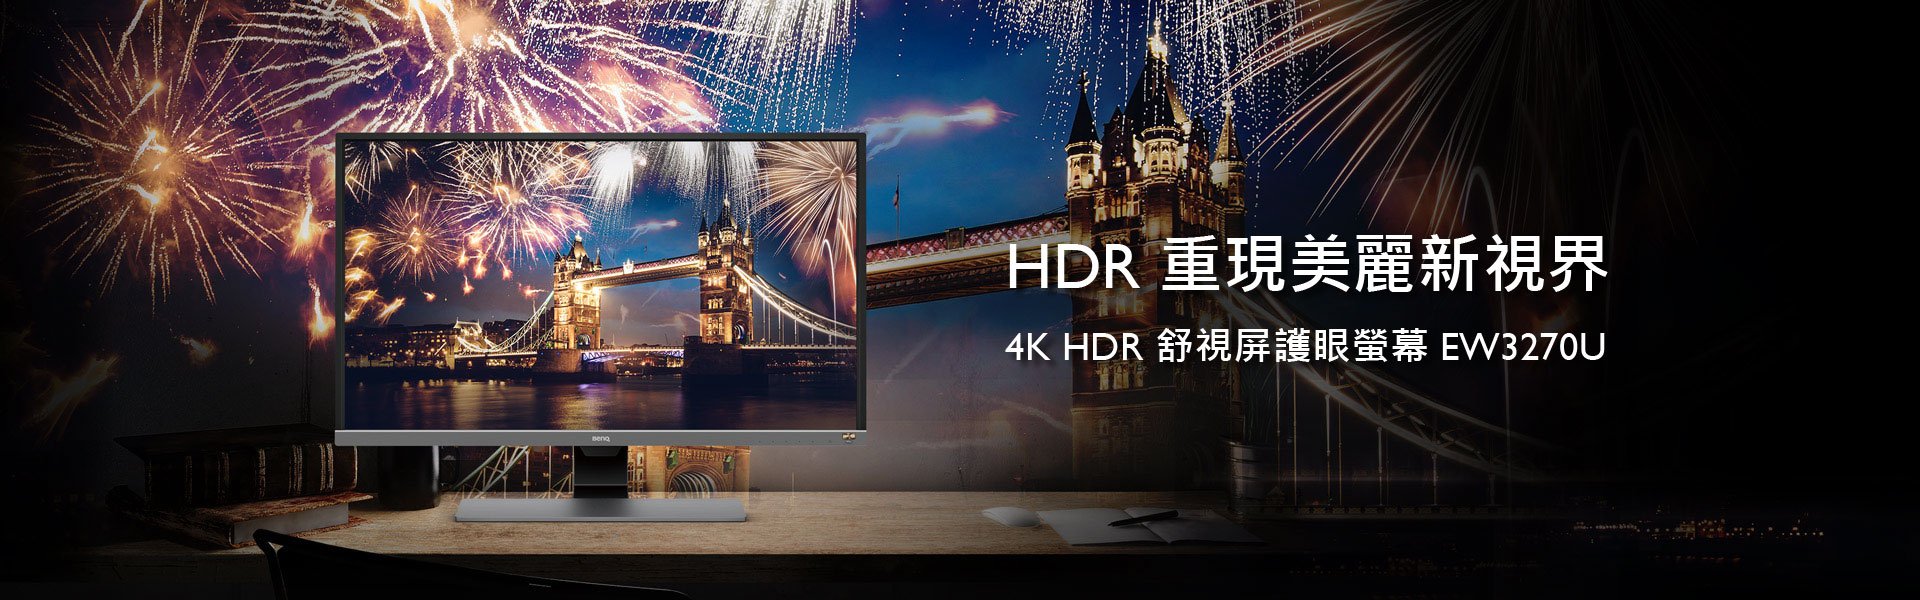 4K HDR 舒視屏護眼螢幕 EW3270U 重現美麗新視界